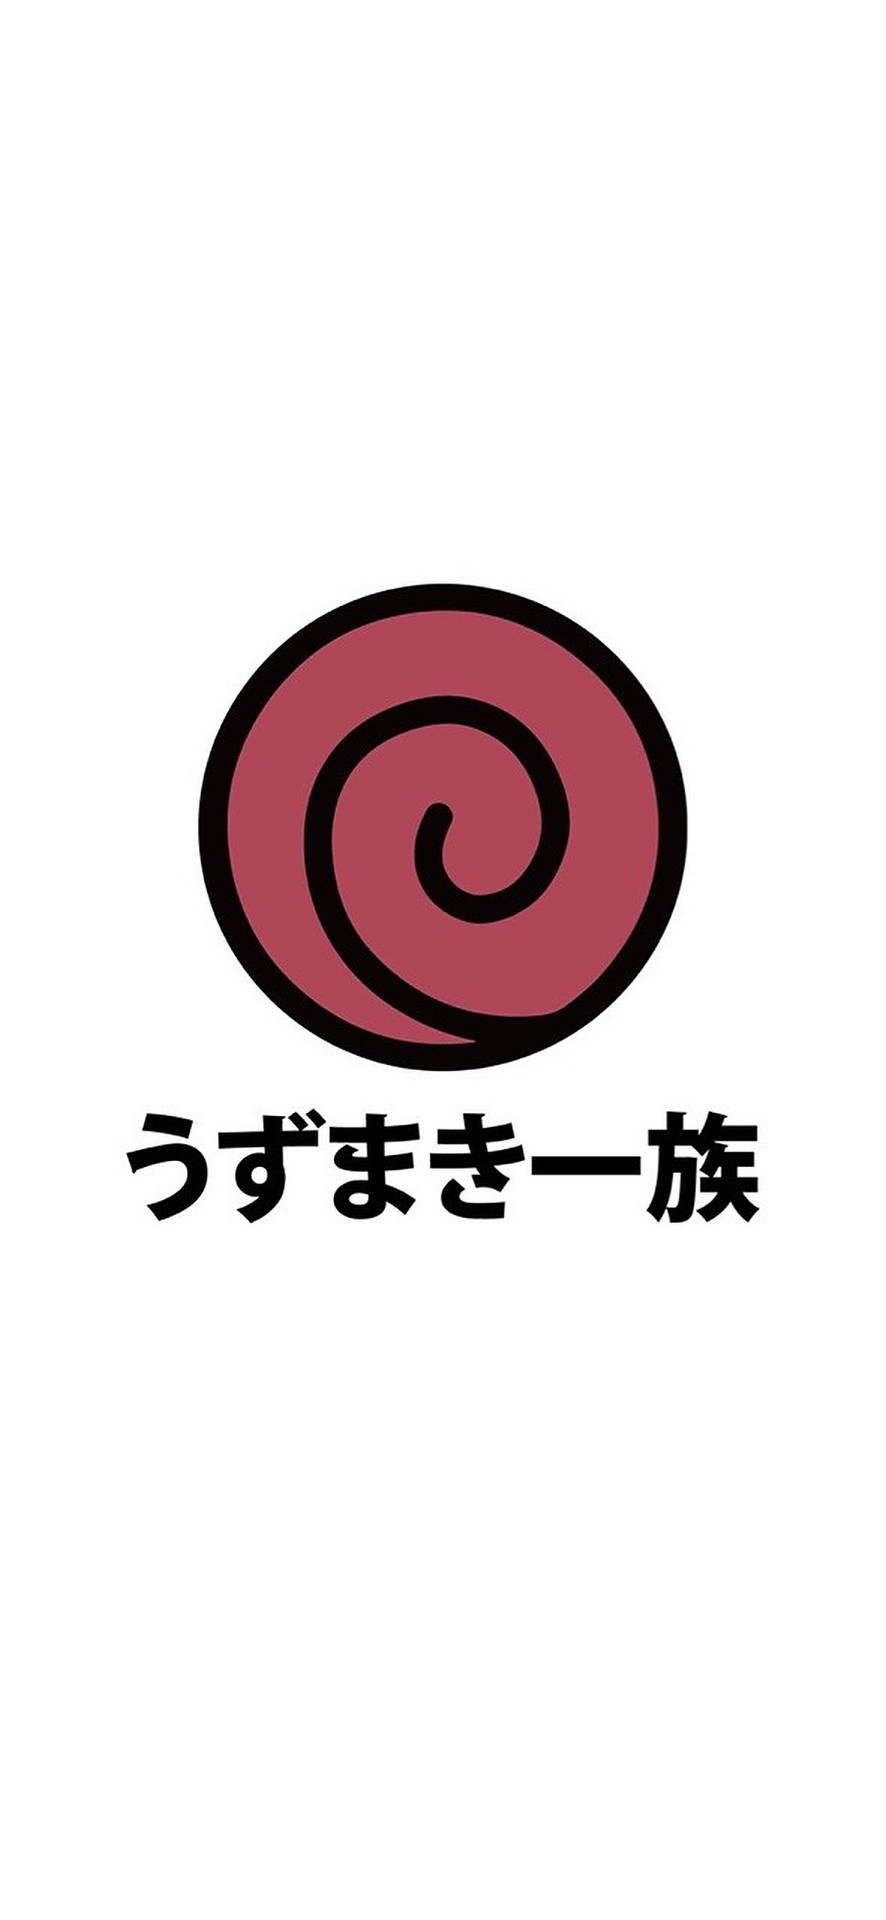 Red Uzumaki Clan Logo Background